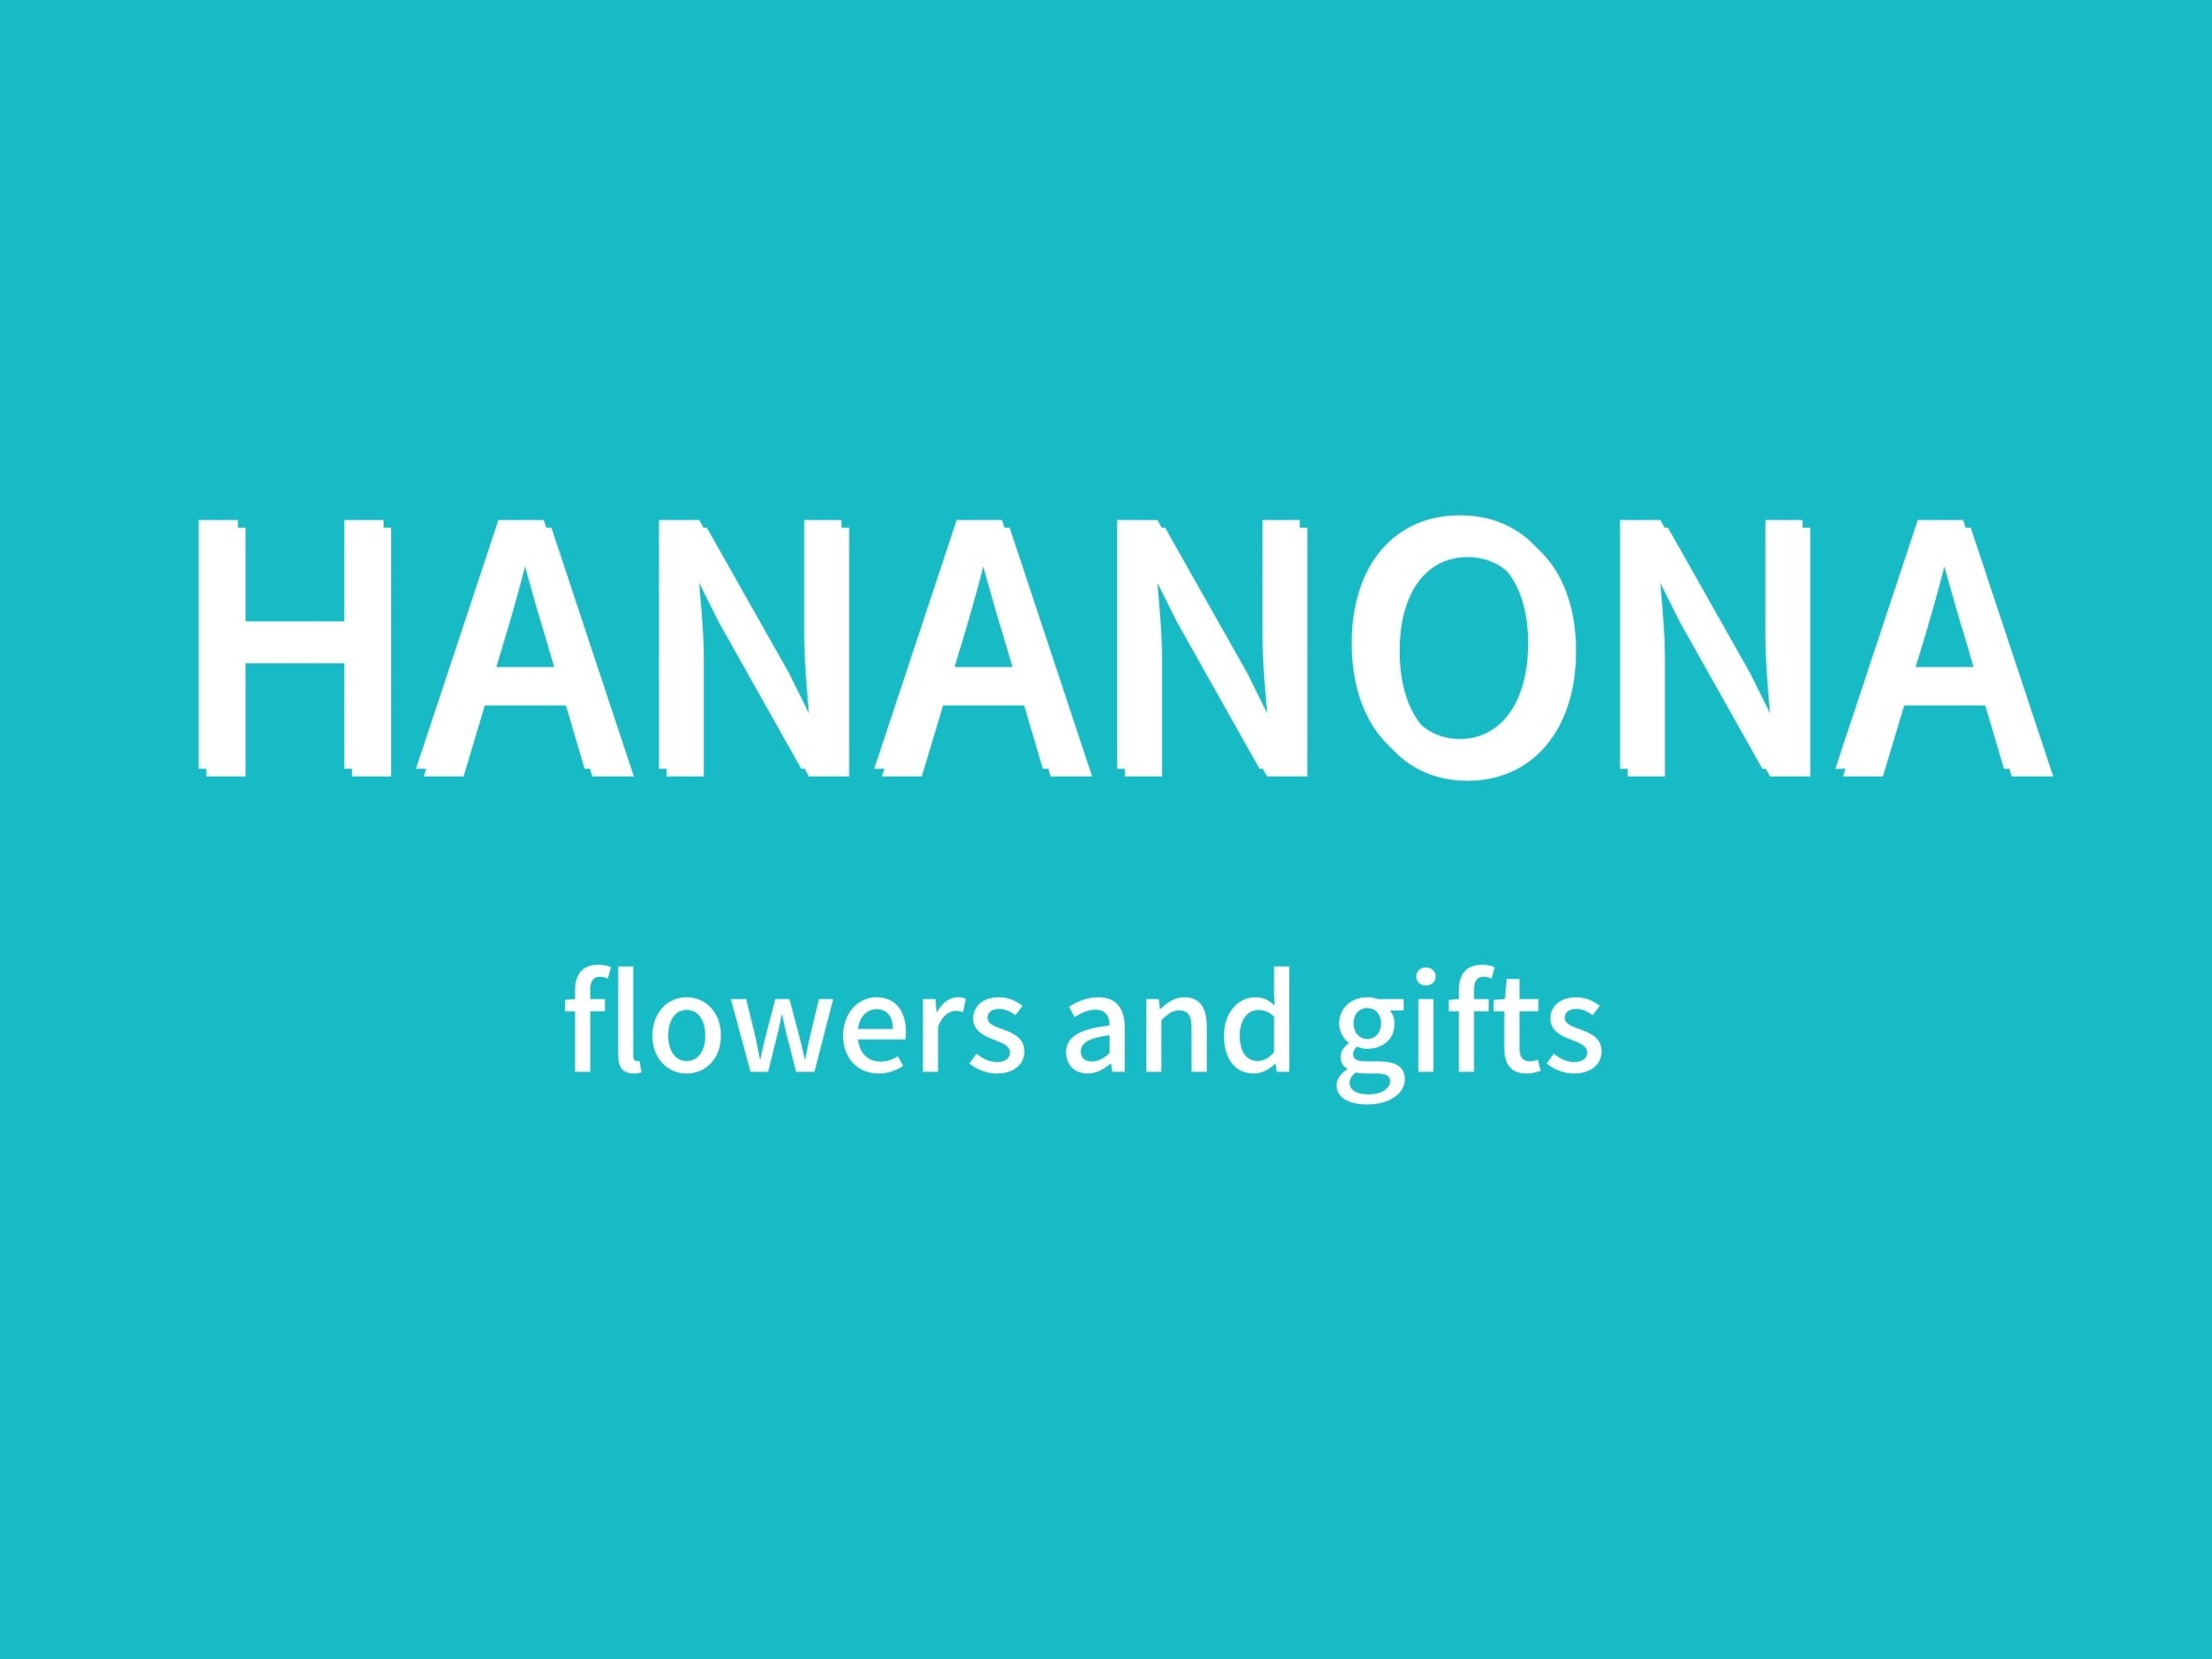 HANANONA flower goods